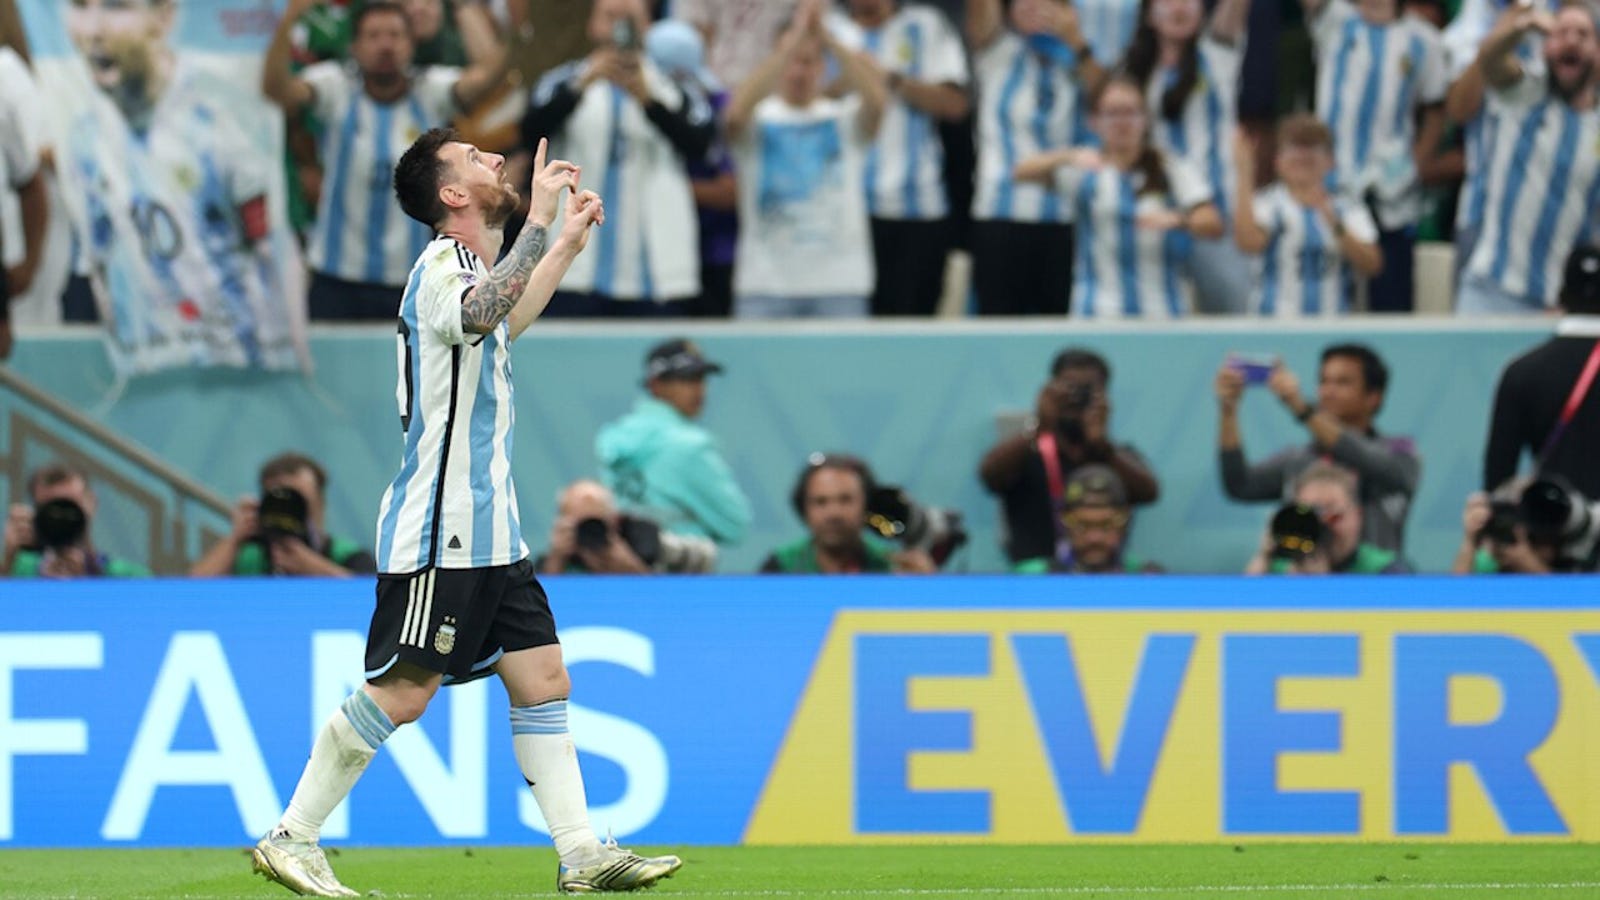 Argentina's Lionel Messi scores against Mexico 64'